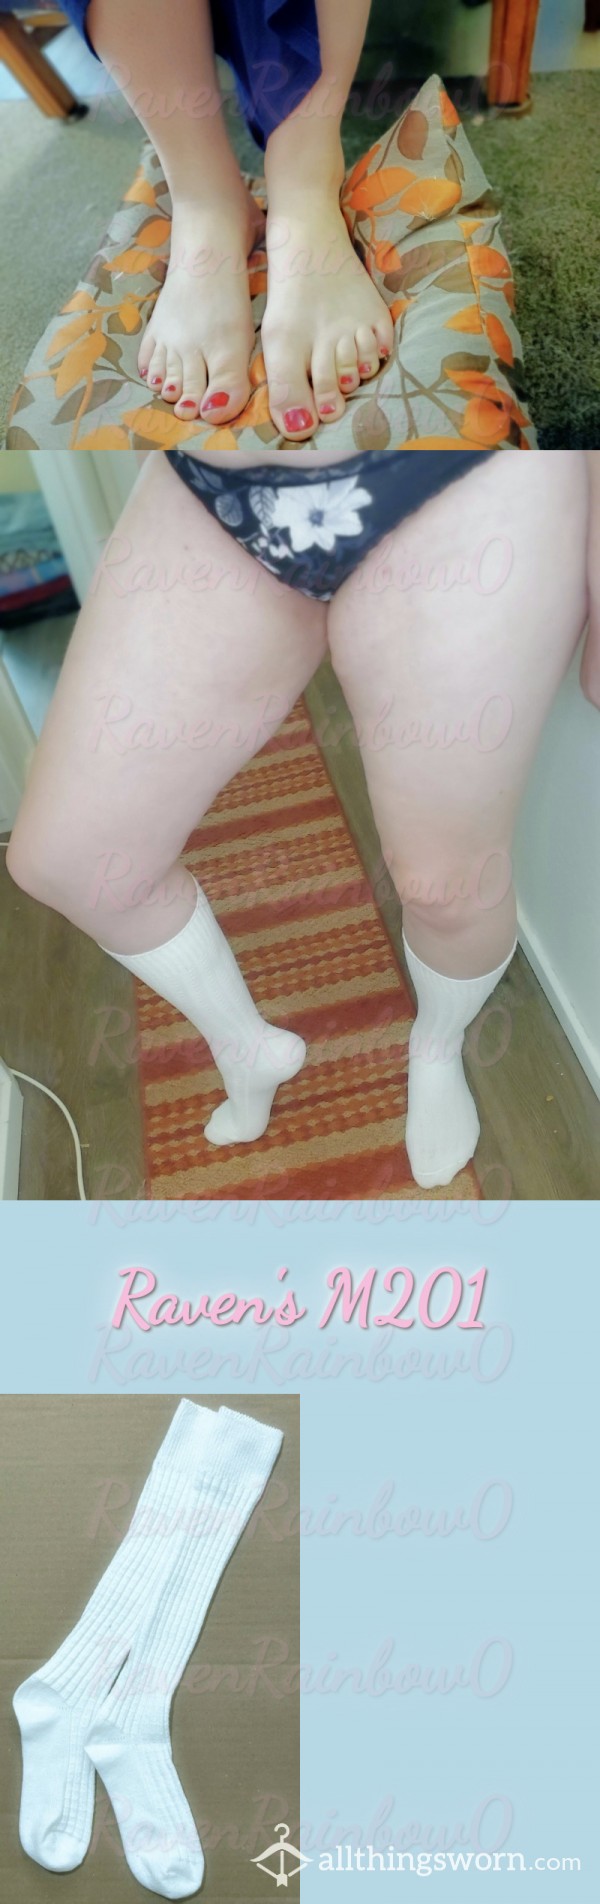 Giantess "Kneehigh" Ankle Socks (Pair) - Taste My Lovely Dutch Socks? [M201]